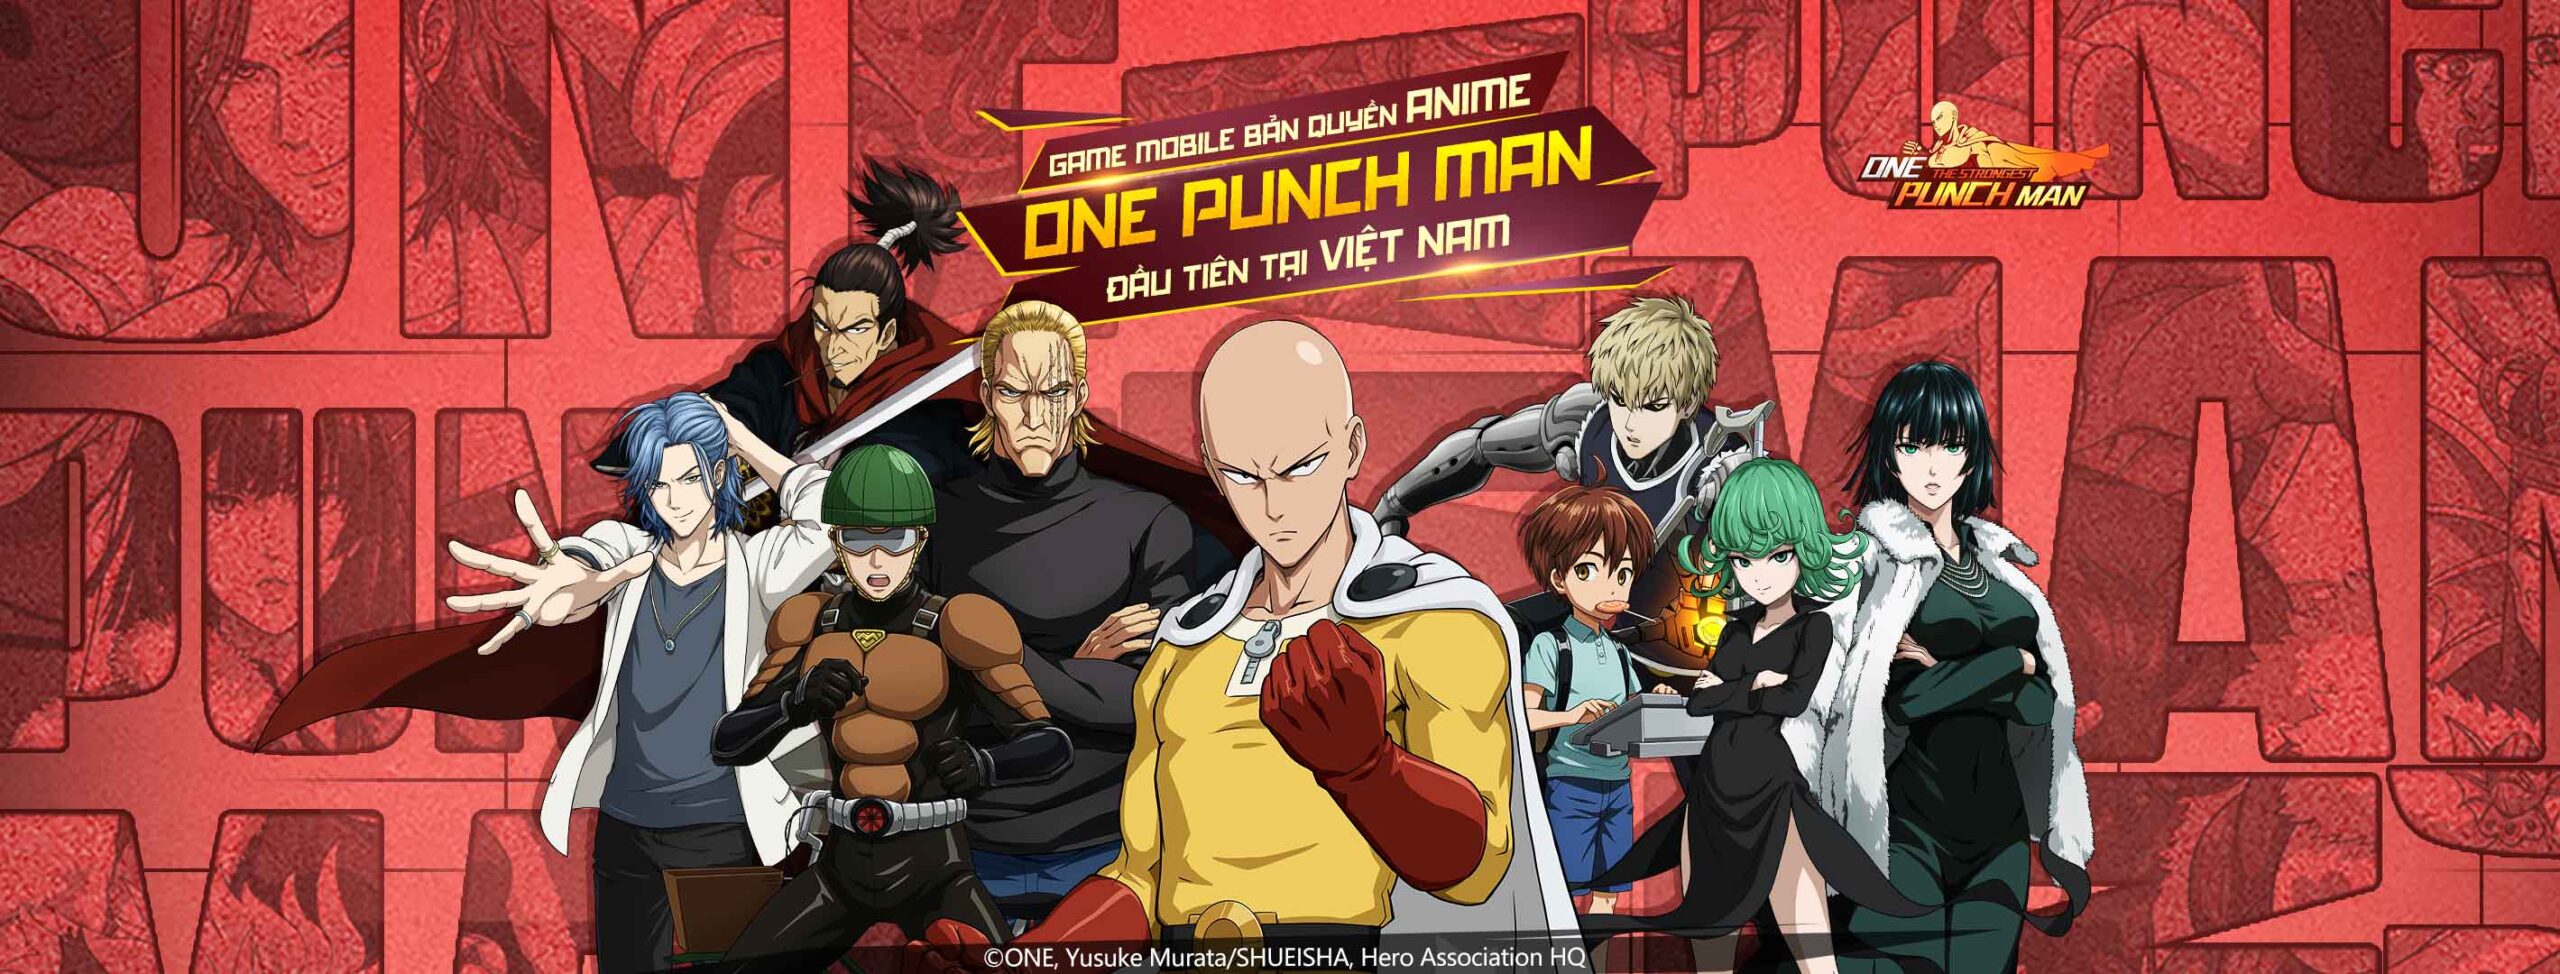 One Punch Man: The Strongest - Game mobile về "Thánh Phồng Tôm" Saitama sắp được VNG phát hành tại Việt Nam